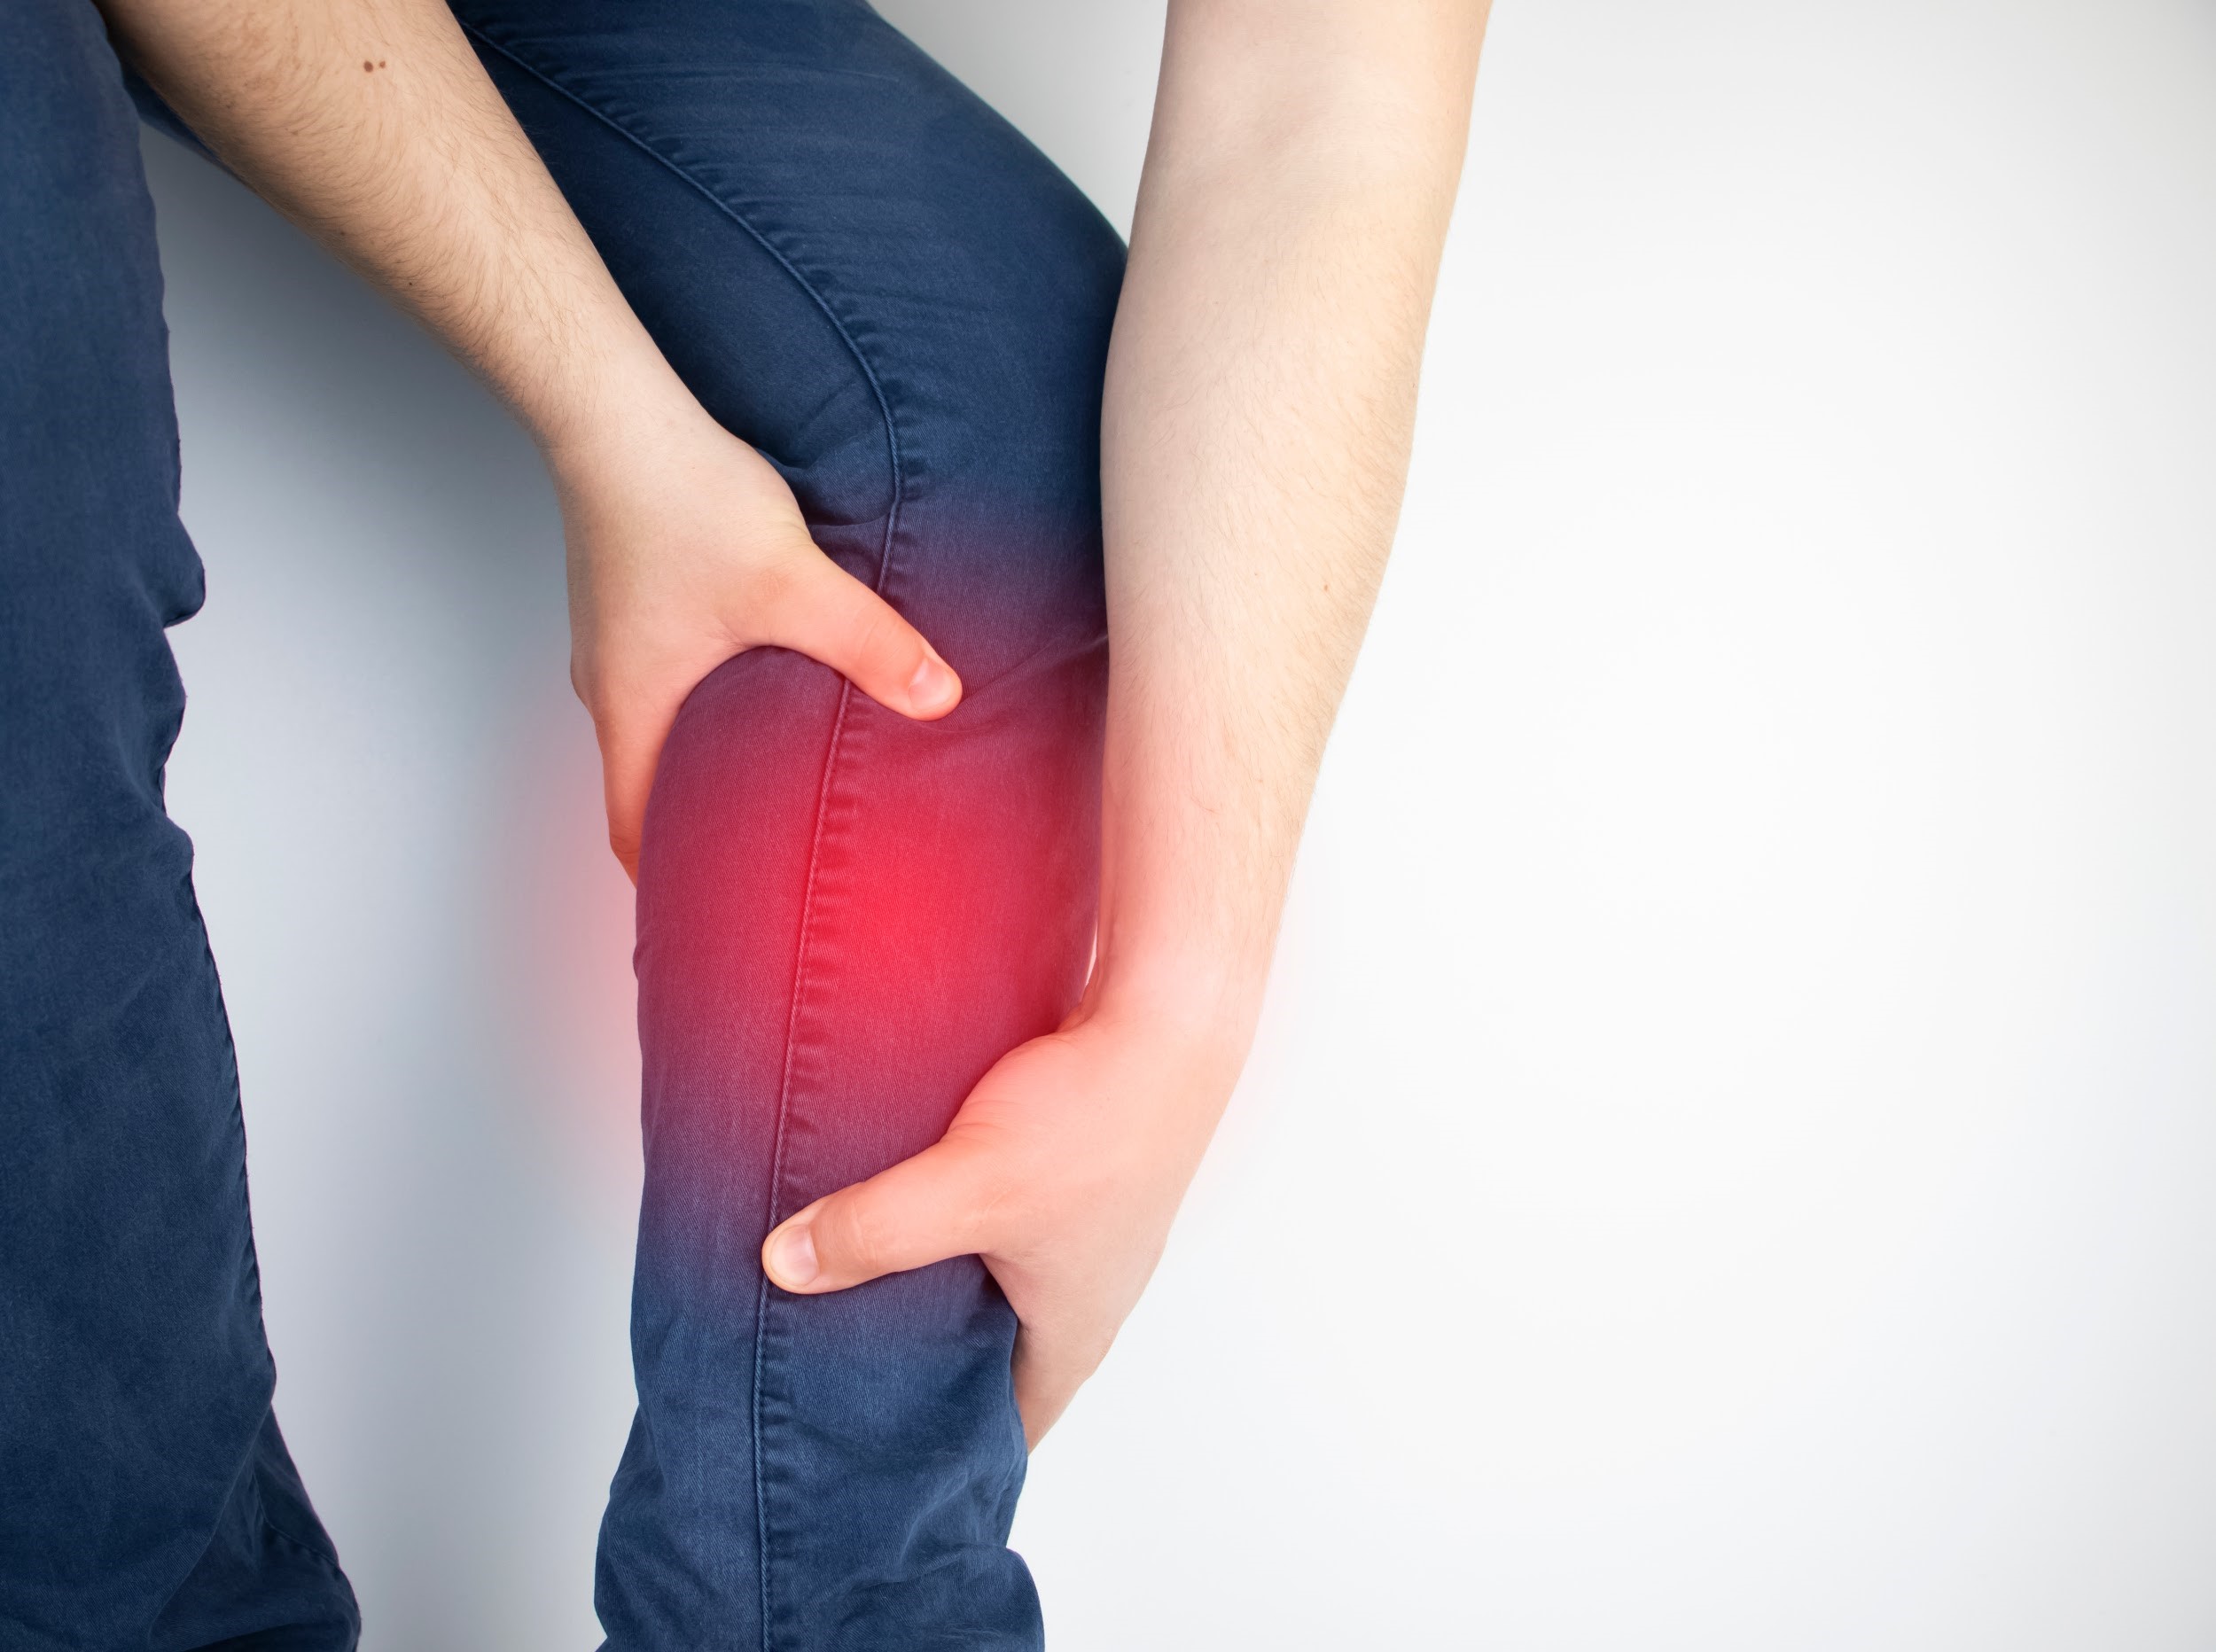  Viêm cơ chân : Tất cả những gì bạn cần biết